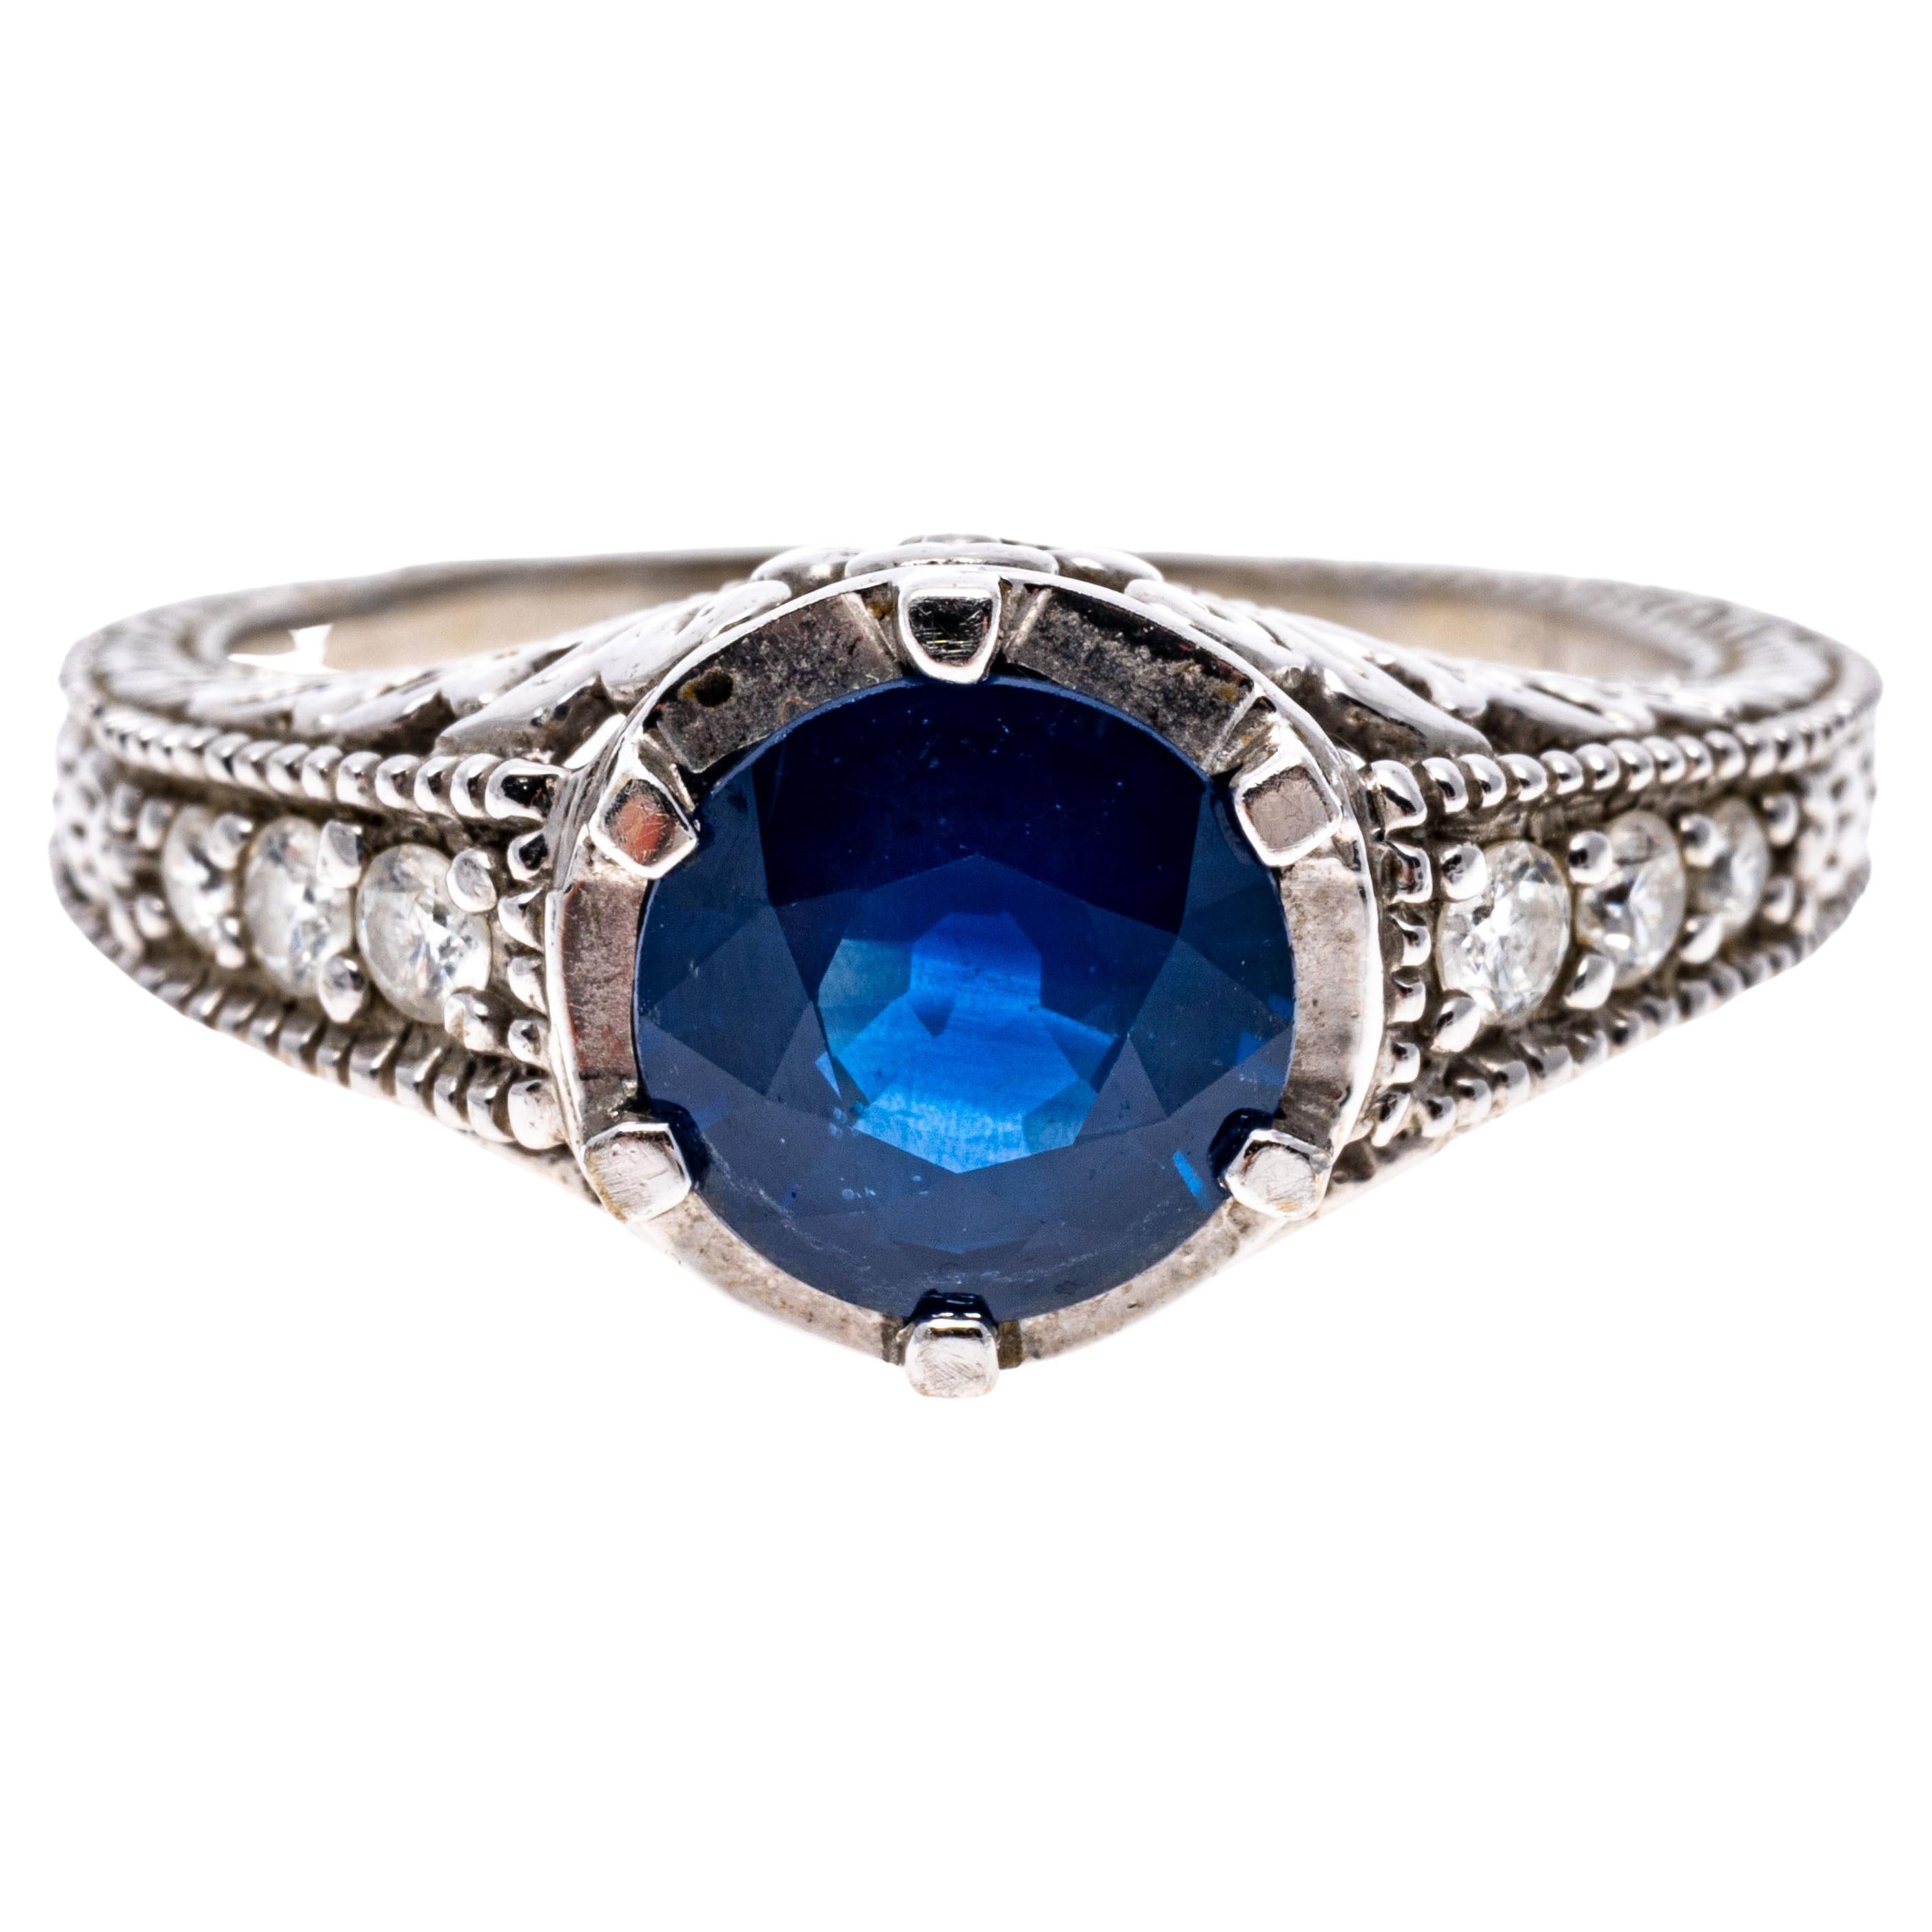 14k Weißgold Runde Blauer Saphir, 1,44 CTS und Diamant-Ring.
Dieser beeindruckende Ring hat einen runden facettierten Saphir Mittelstein von marineblauer Farbe, 1,44 CTS mit einem Weißgold Halo, flankiert von fast farblosen runden Diamanten im